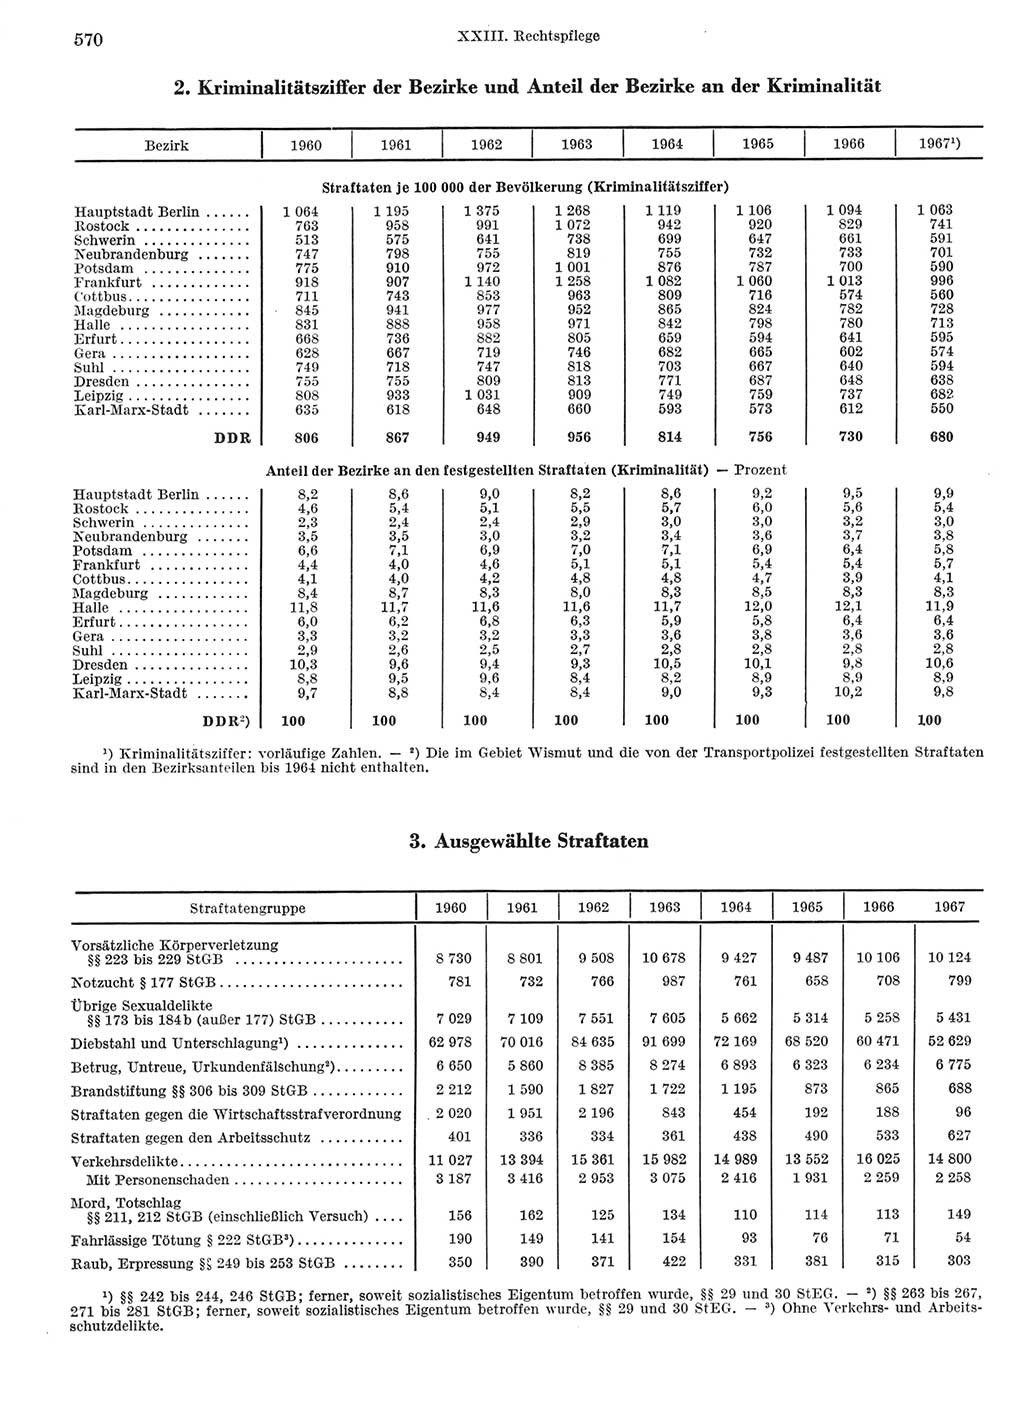 Statistisches Jahrbuch der Deutschen Demokratischen Republik (DDR) 1968, Seite 570 (Stat. Jb. DDR 1968, S. 570)